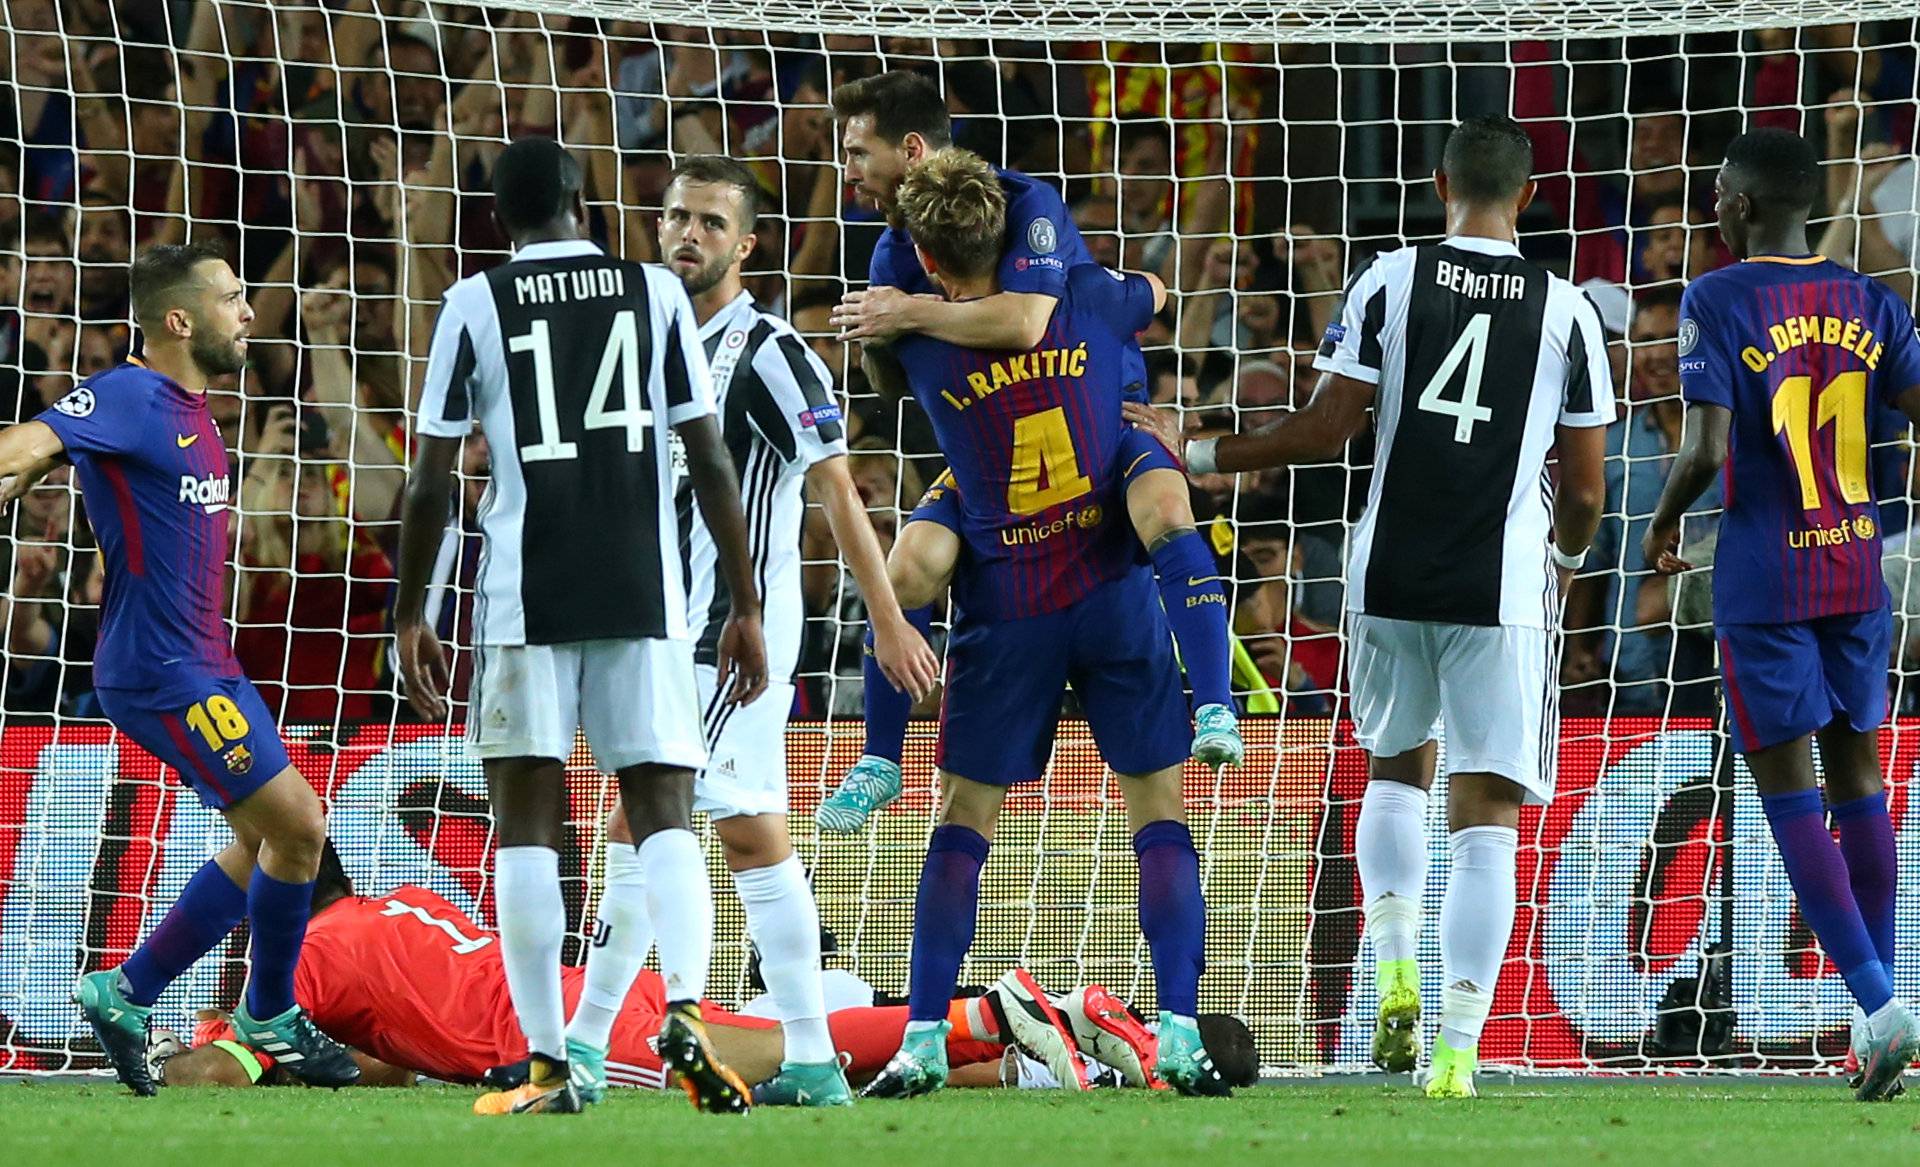 Champions League - FC Barcelona vs Juventus